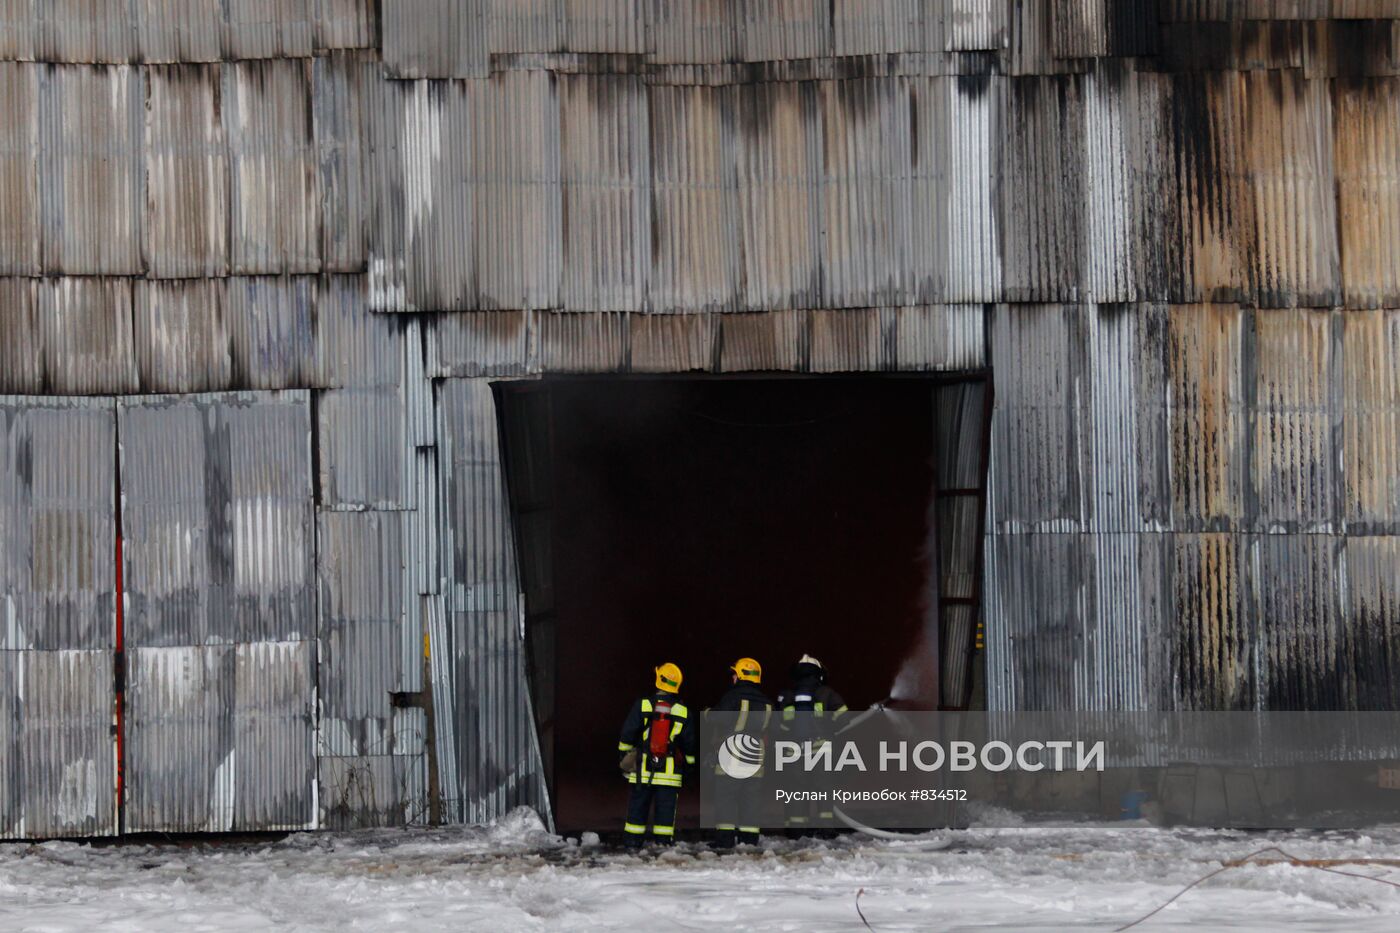 Тушение пожара на складе с мебелью на северо-востоке Москвы